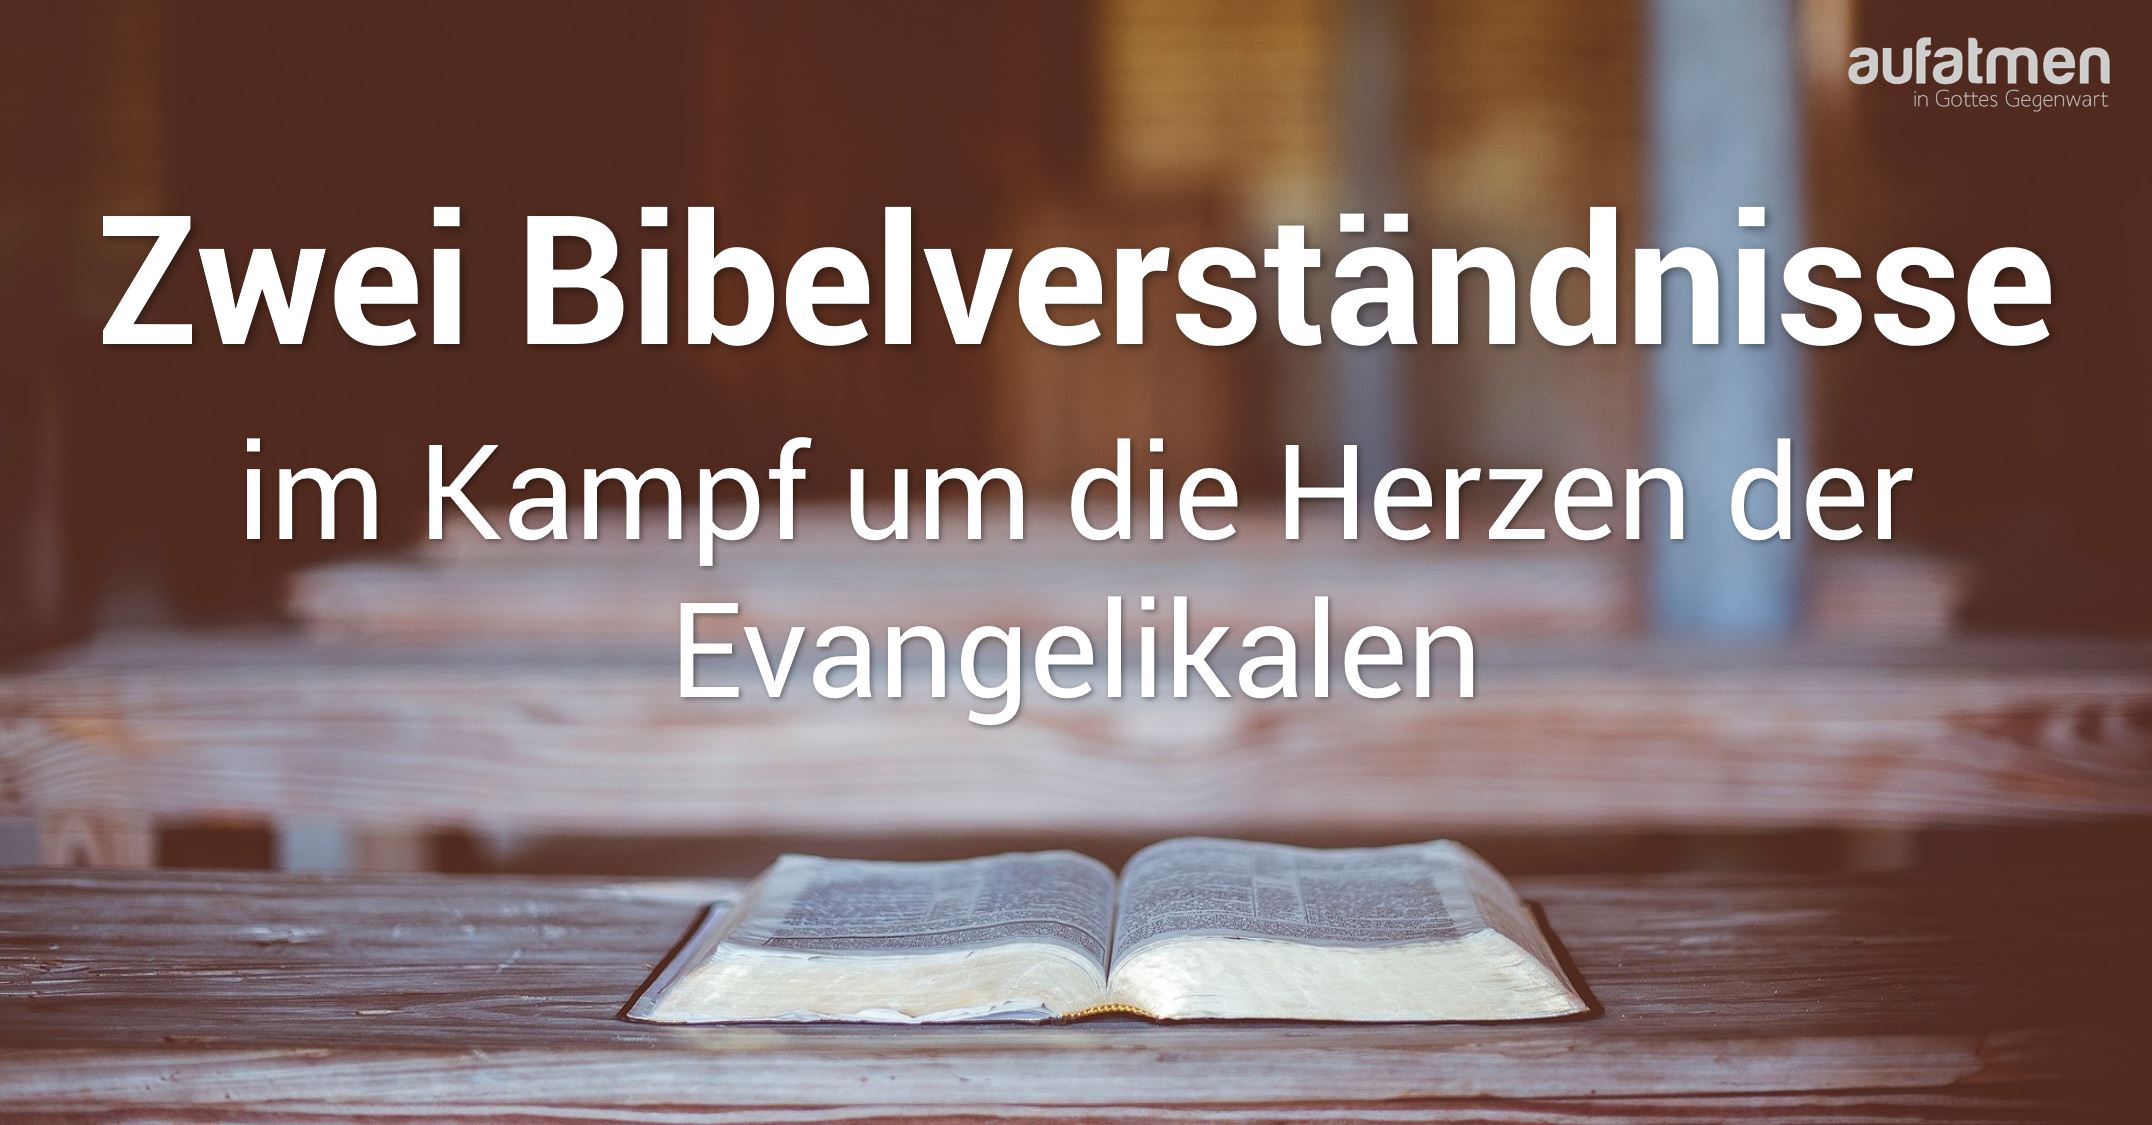 Zwei Bibelverständnisse im Kampf um die Herzen der Evangelikalen